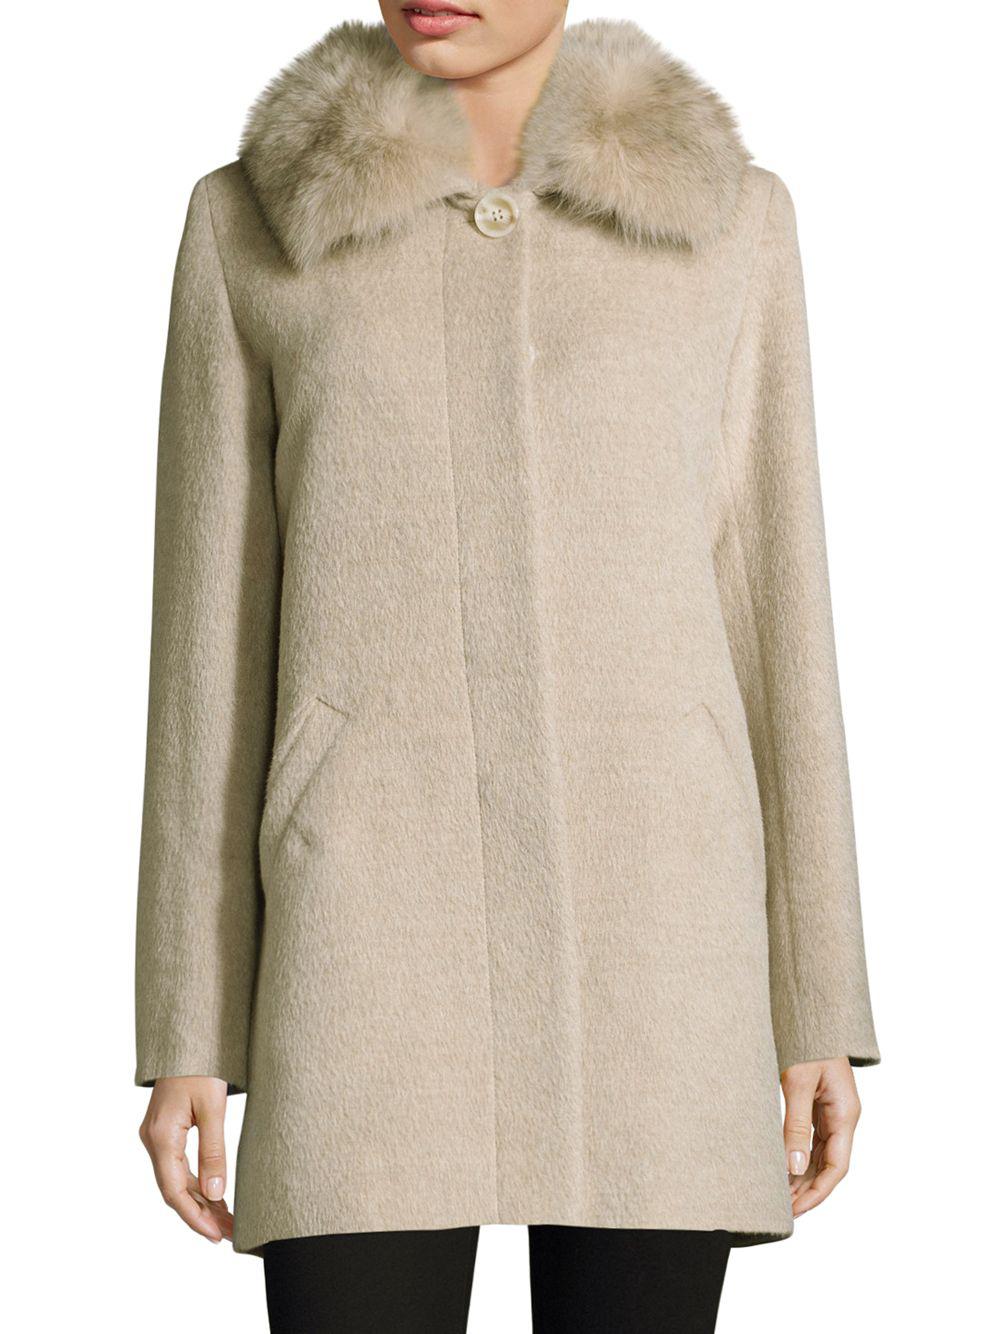 Sofia Cashmere Fox Fur-trimmed Alpaca Wool Car Coat in Stone (Natural ...